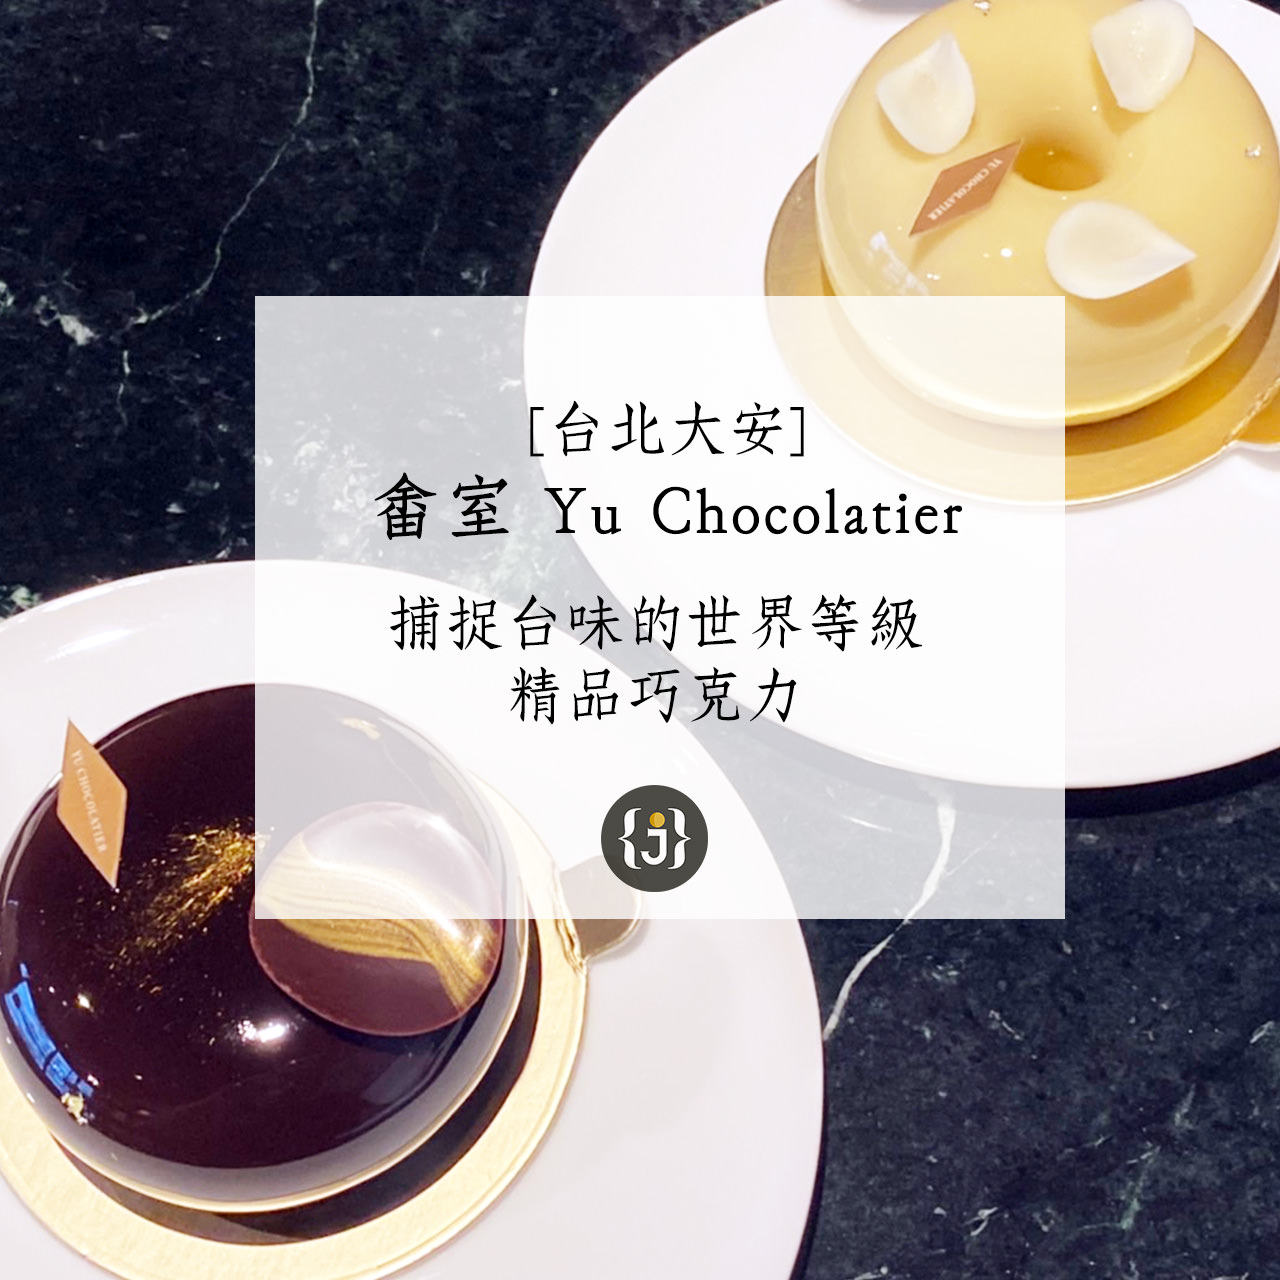 台北大安畬室 Yu Chocolatier附菜單捕捉台味的世界等級精品巧克力